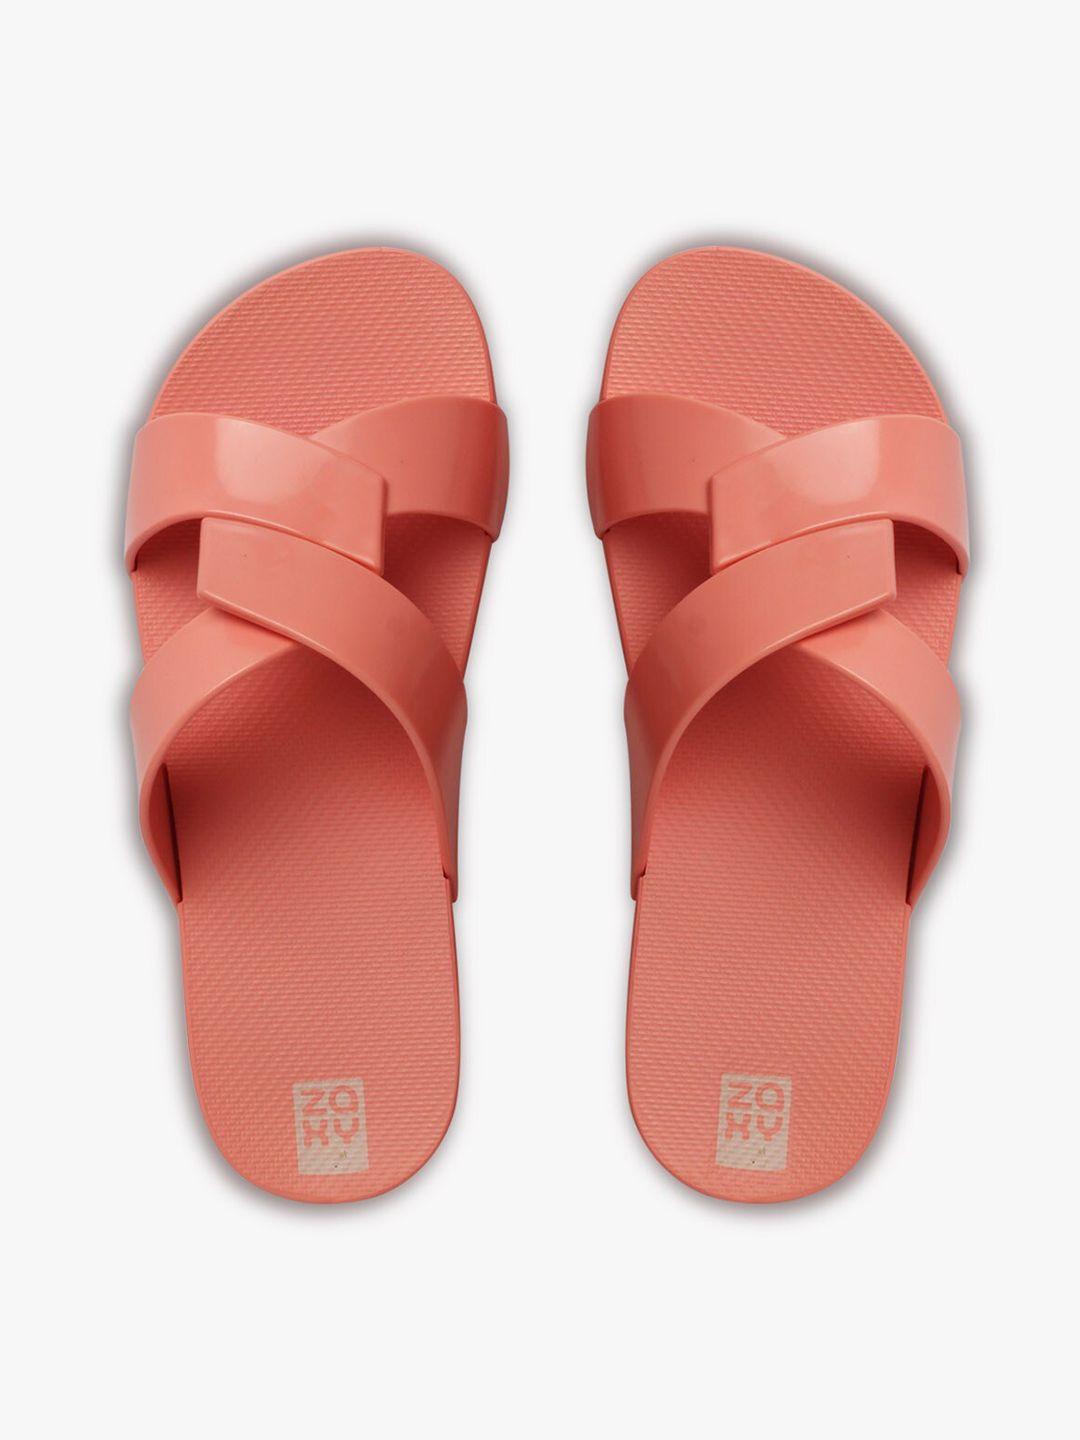 zaxy women pink open toe flats